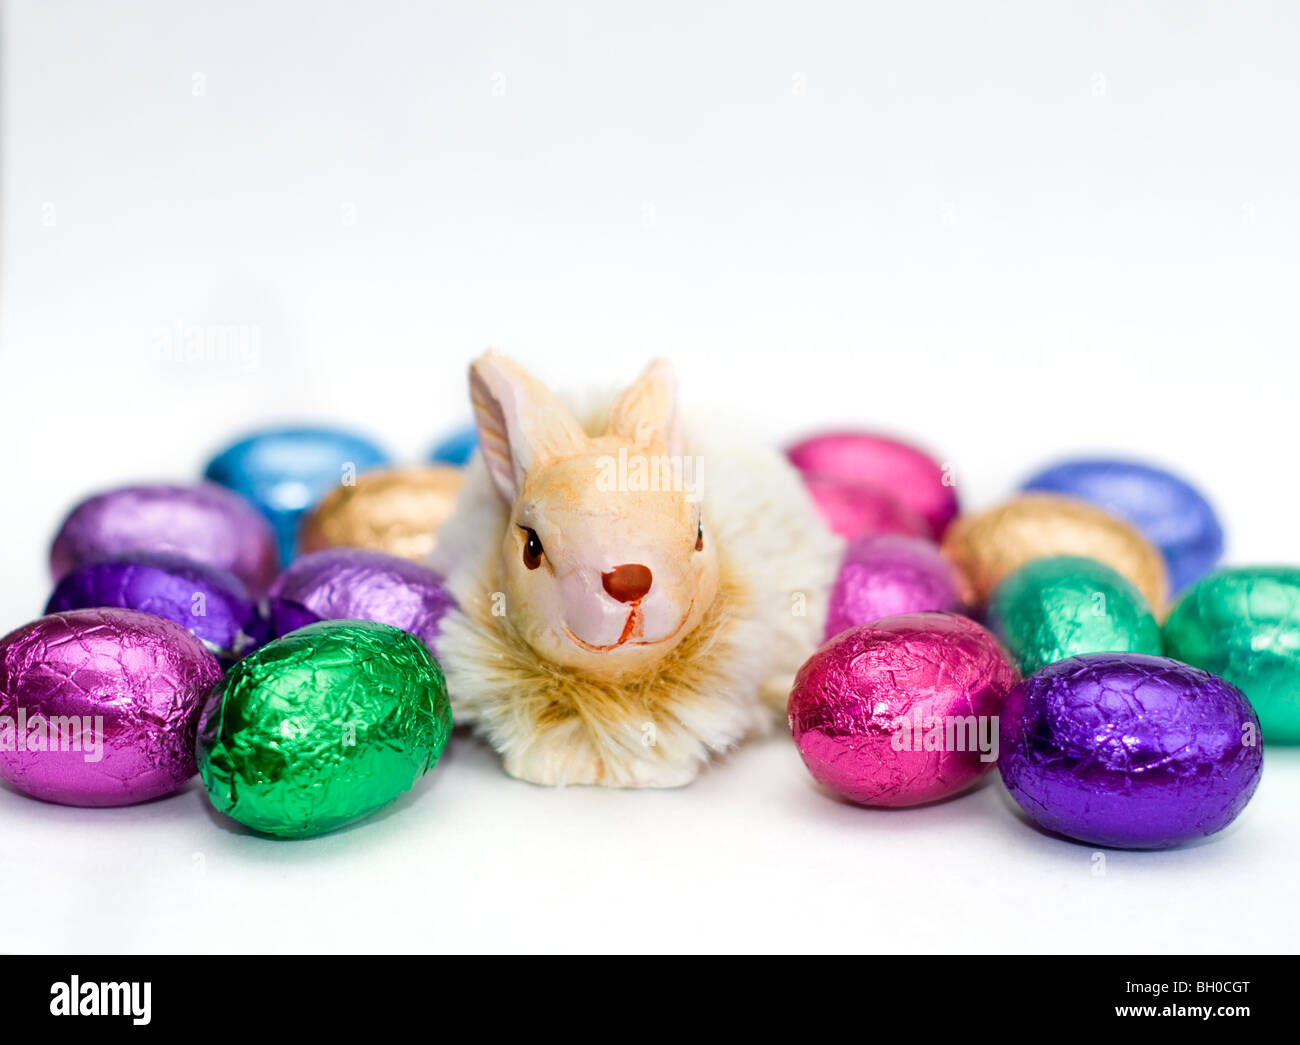 Ornamento De Un conejo rodeado por una selección de coloridos mini huevos de Pascua de chocolate sobre un fondo blanco. Foto de stock